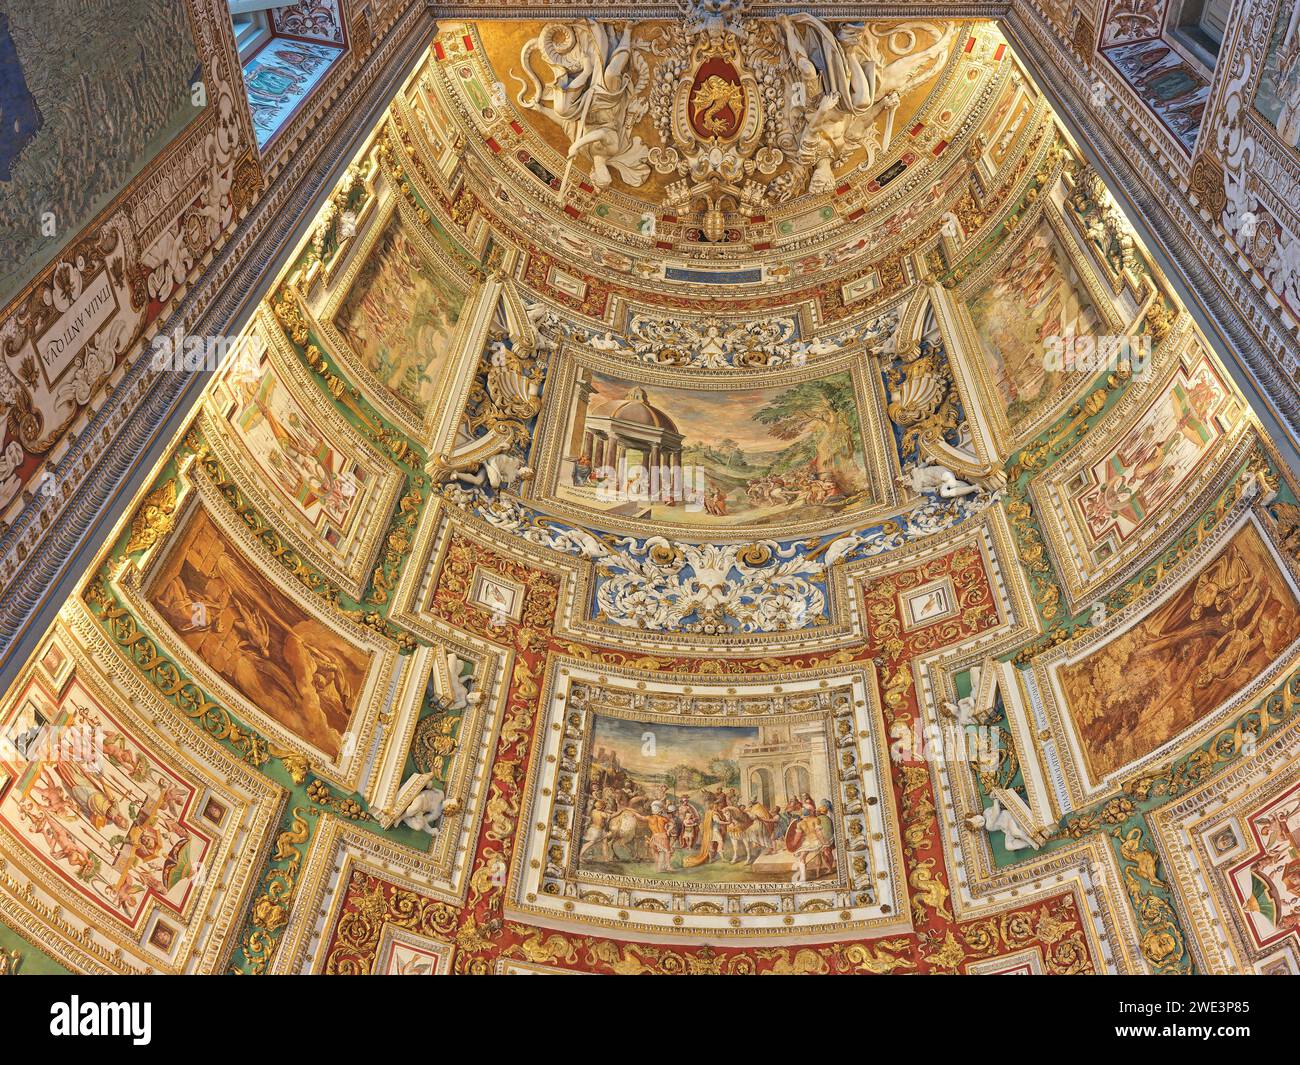 Dipinti e decorazioni sul soffitto nella galleria di mappe geografiche, Musei Vaticani, Roma, Italia. Foto Stock